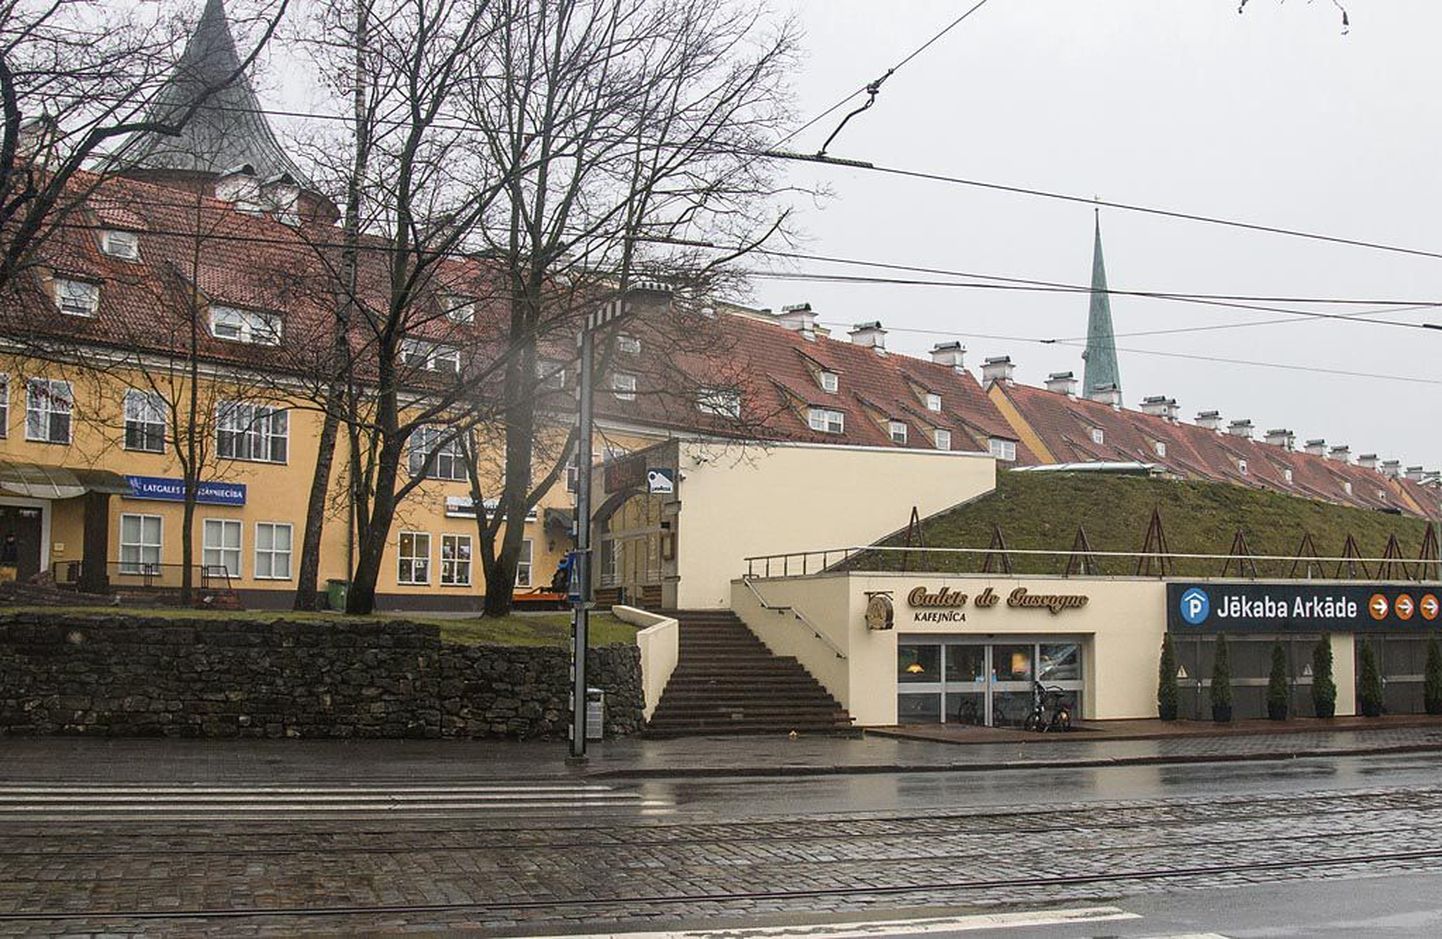 Rootsi ajal ehitatud kasarmukompleksi ees asuvat linna kindlustusvalli markeerivat maa-alust garaaži ei loeta kõige õnnestunumaks, sest see varjab ajalooliste hoonete fassaadi.